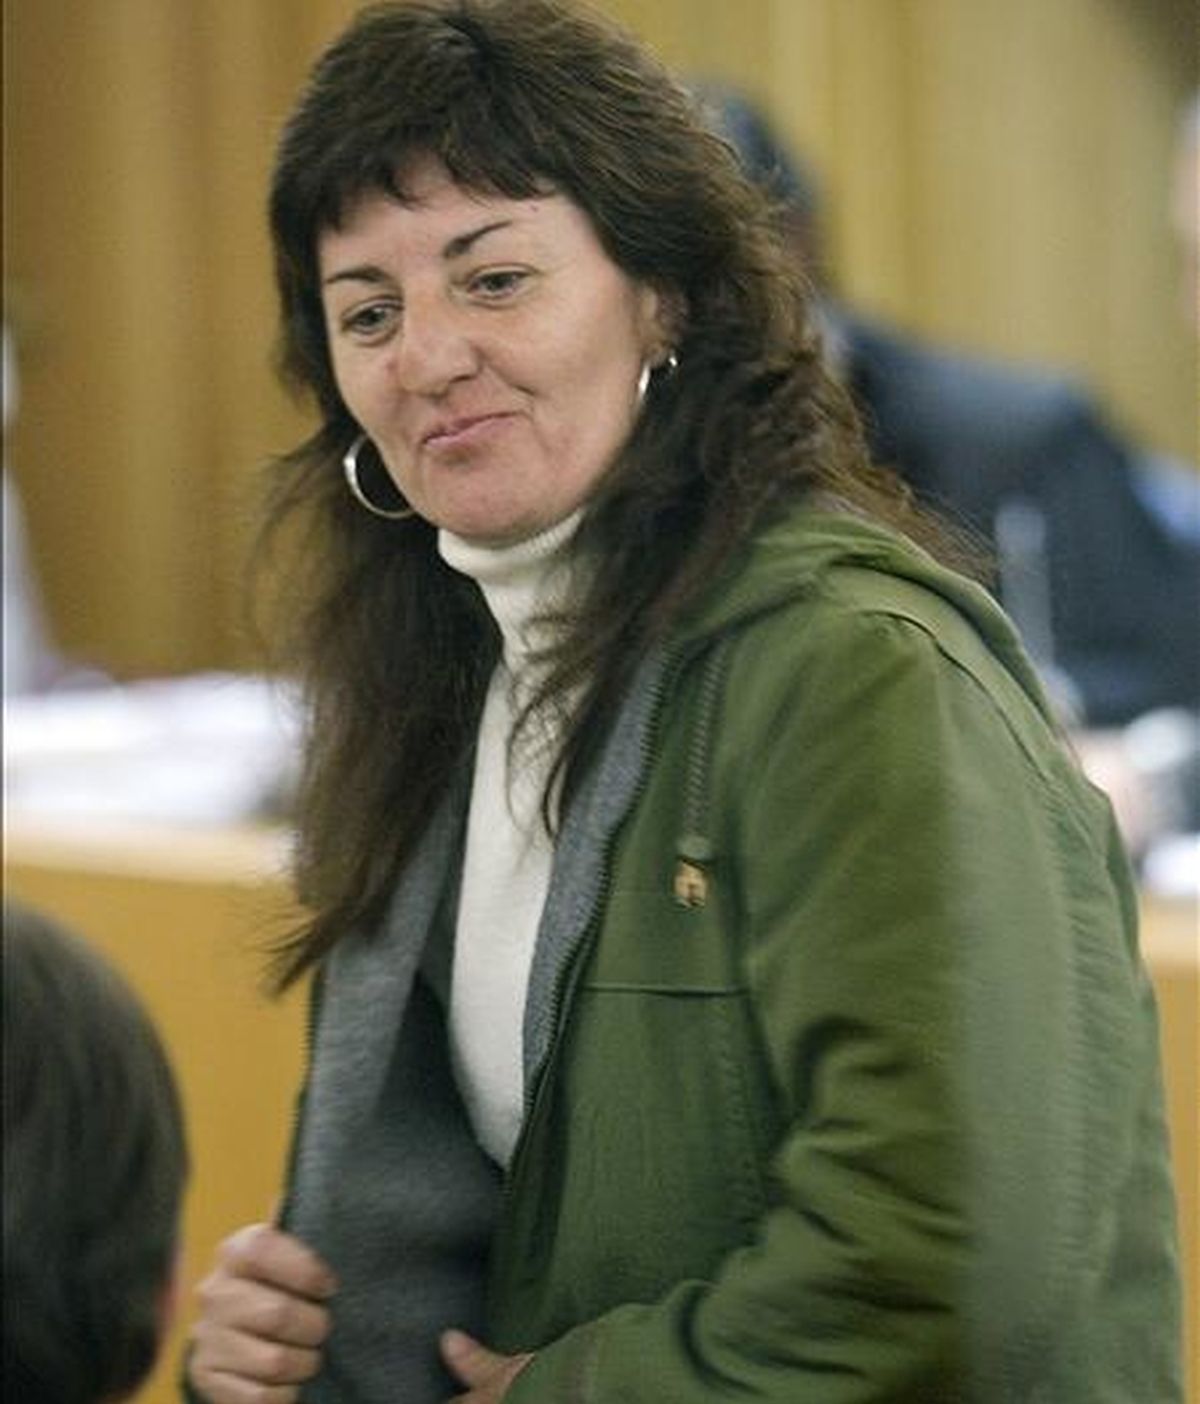 La miembro de los GRAPO María de los Angeles Ruíz, durante el juicio celebrado hoy en la Audiencia Nacional, en el que el fiscal pide siete años de cárcel para ella por el atraco a un furgón blindado en Barcelona, el 23 de septiembre de 2000. EFE